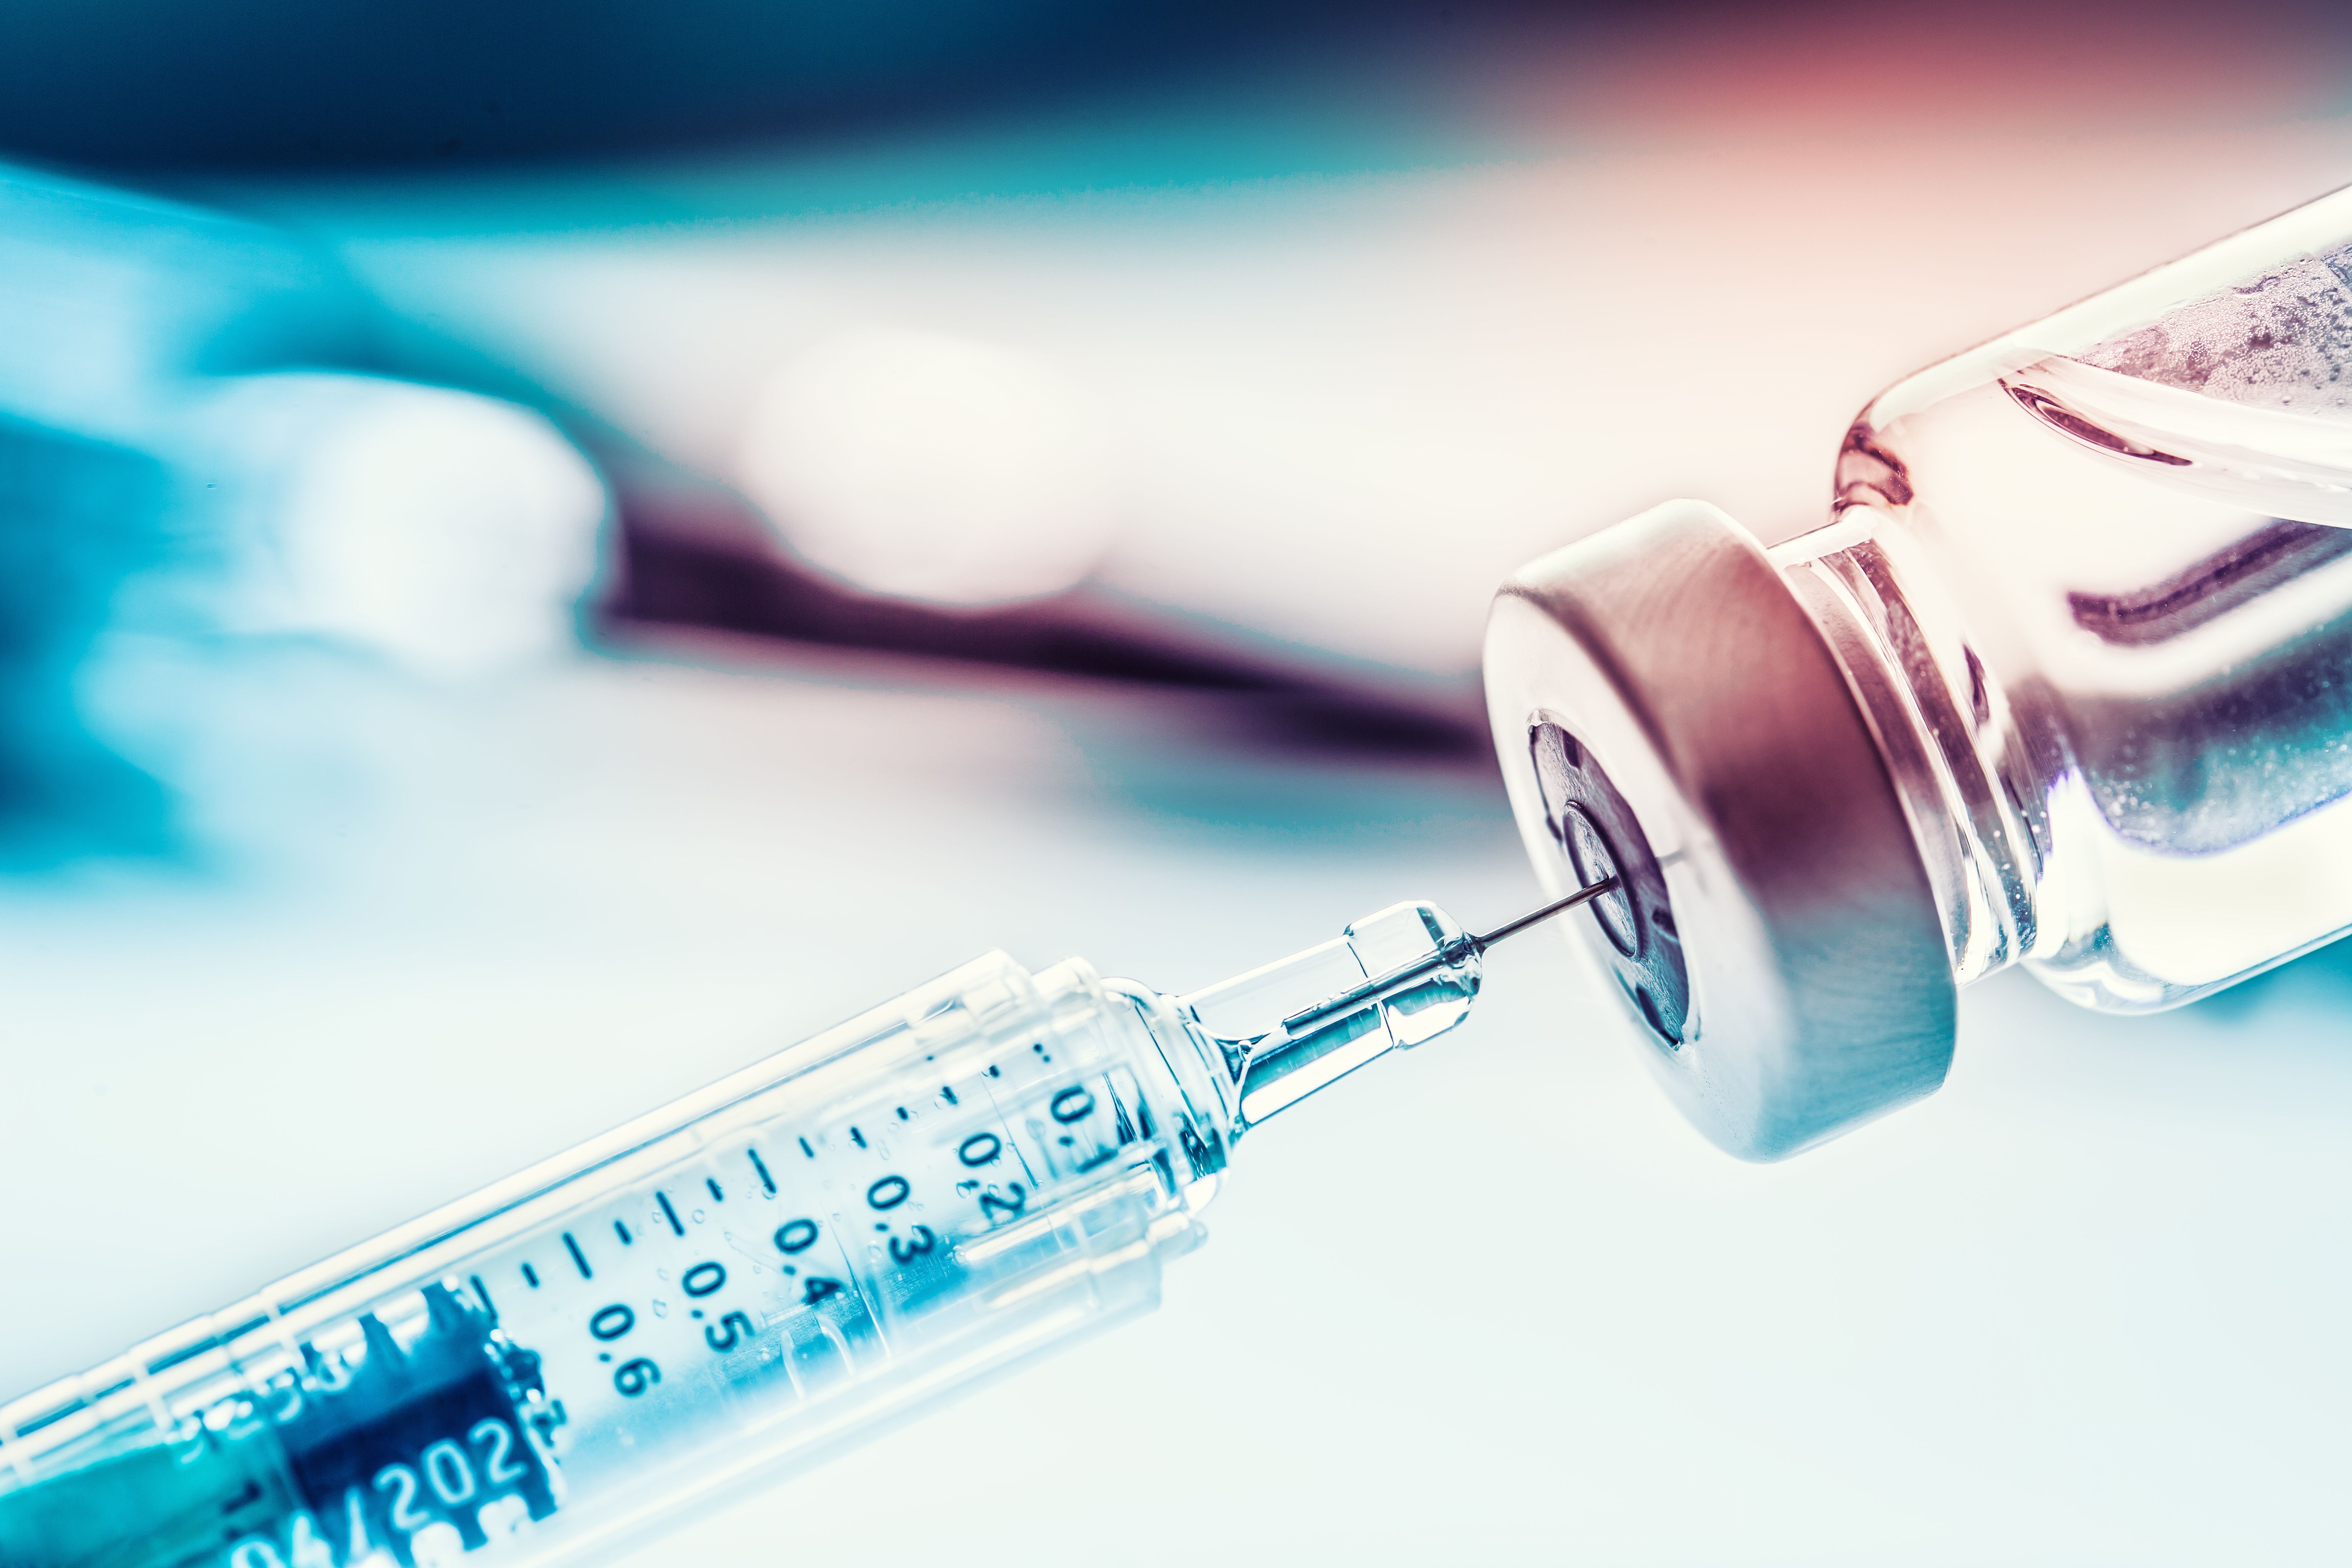 Studien zeigen, dass aktuelle COVID-19-Impfstoffe eine robuste Immunität gegen die Omicron-Variante induzieren